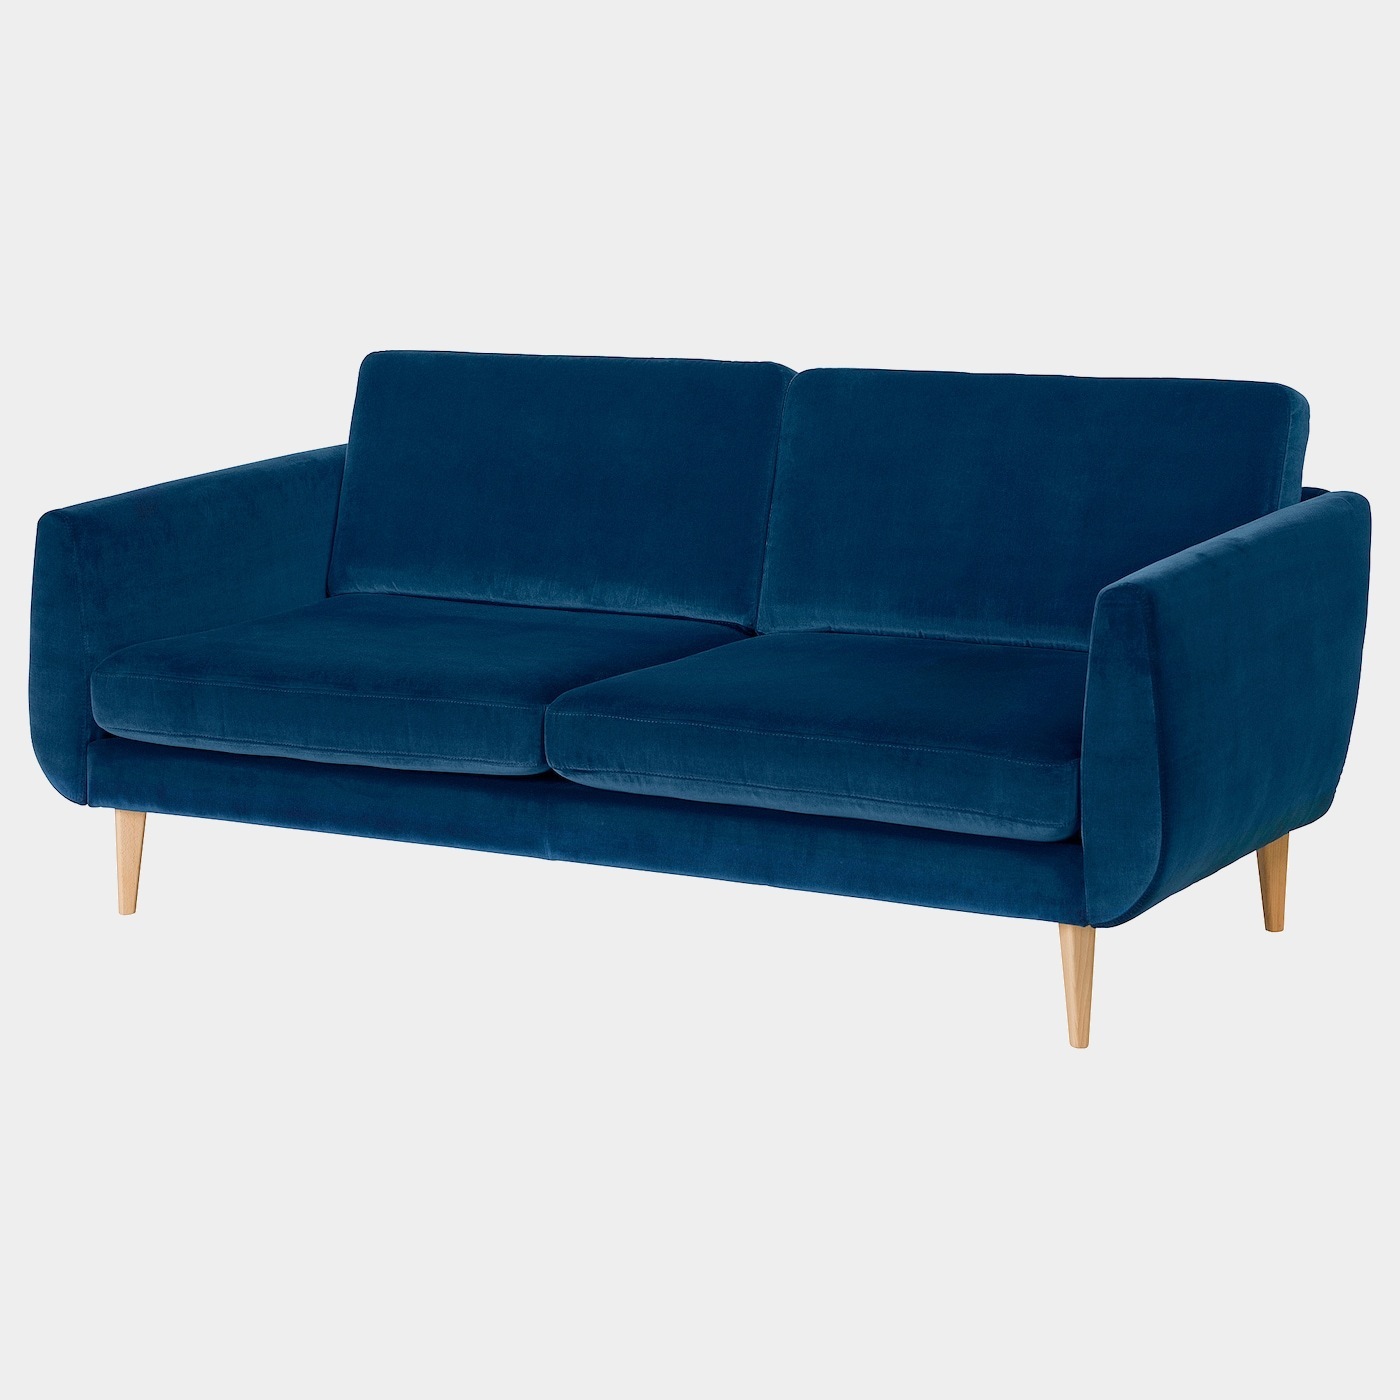 SMEDSTORP 3er-Sofa  -  - Möbel Ideen für dein Zuhause von Home Trends. Möbel Trends von Social Media Influencer für dein Skandi Zuhause.